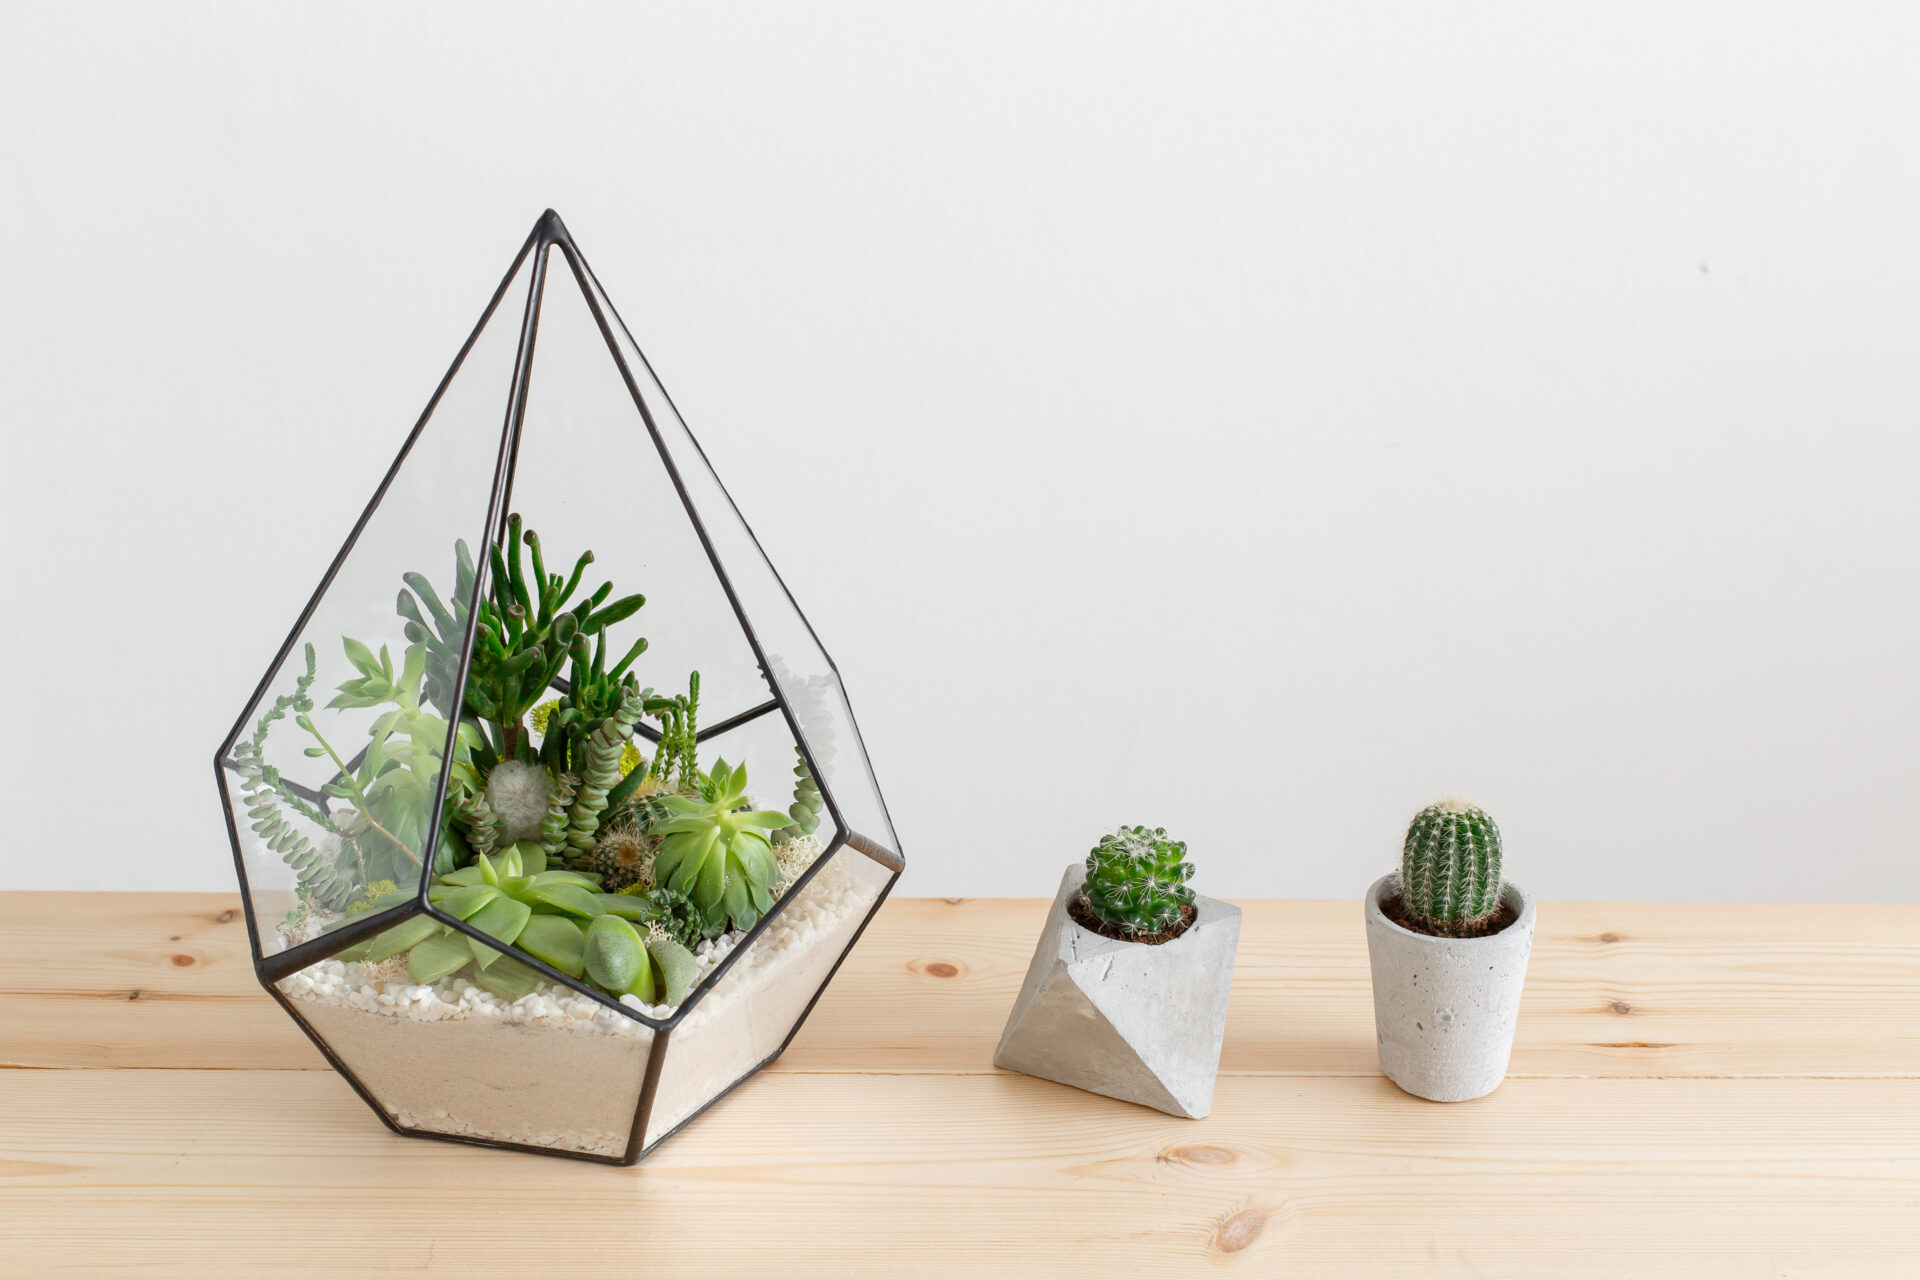 Ogród w szkle Kompozycja w geometrycznym, szklanym pojemniku